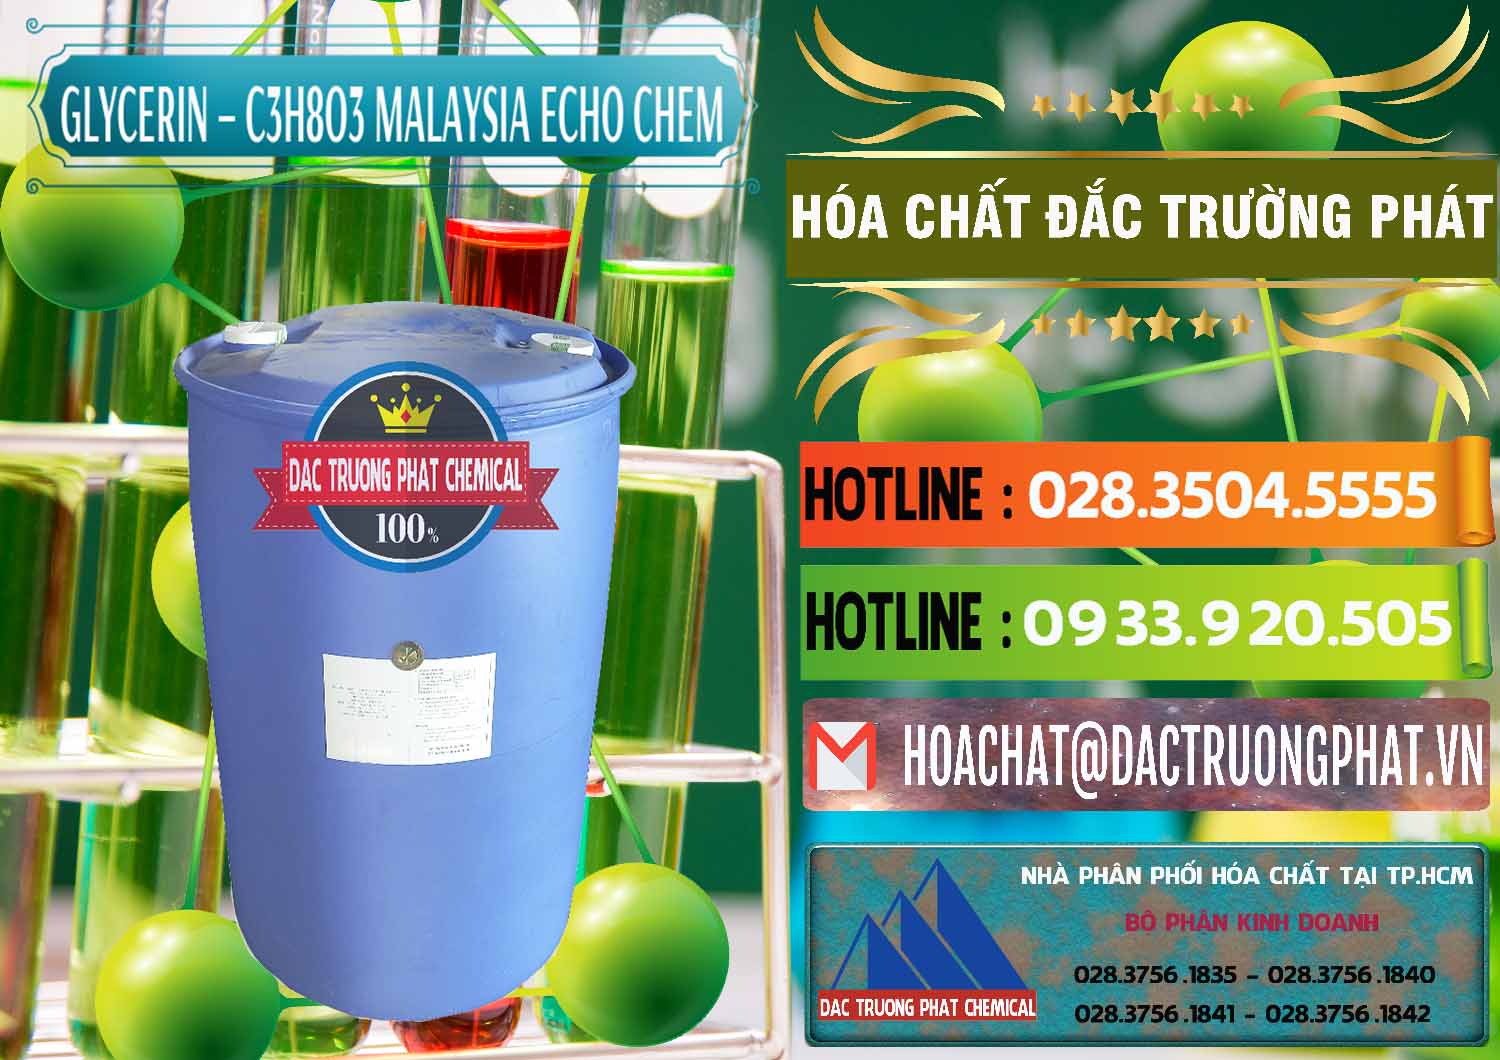 Chuyên bán - cung ứng C3H8O3 - Glycerin 99.7% Echo Chem Malaysia - 0273 - Phân phối - kinh doanh hóa chất tại TP.HCM - cungcaphoachat.com.vn